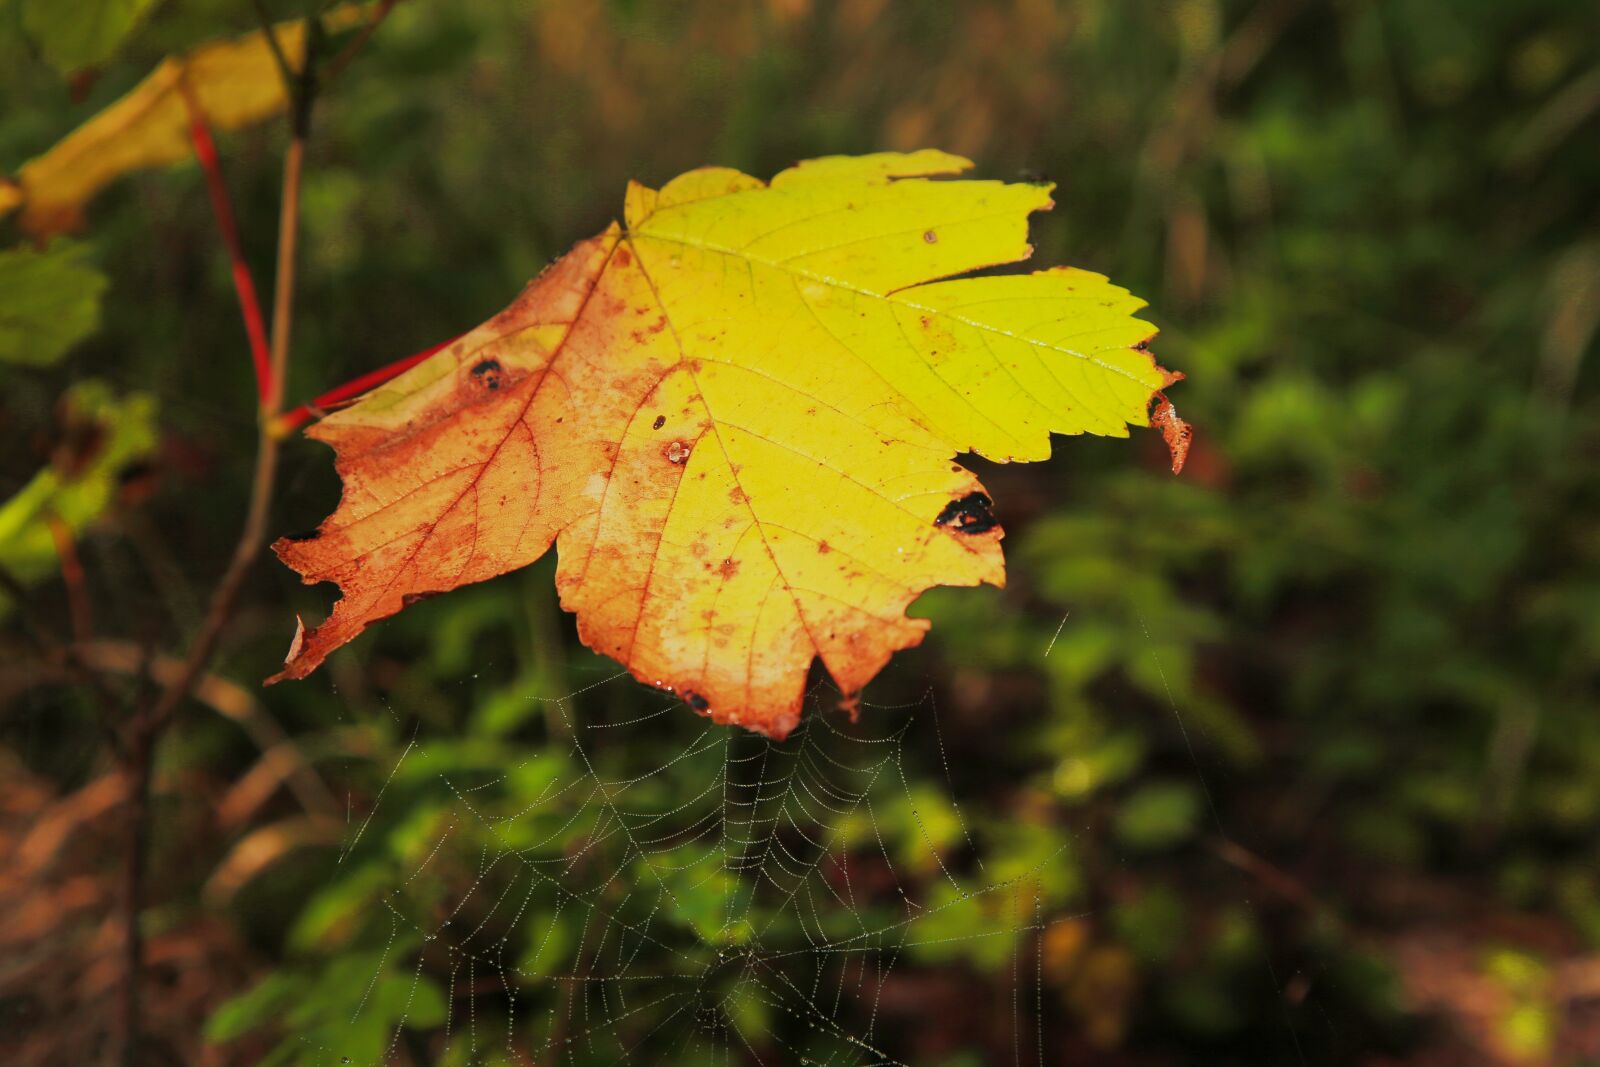 Canon EOS-1D C sample photo. Autumn, leaf, fall foliage photography